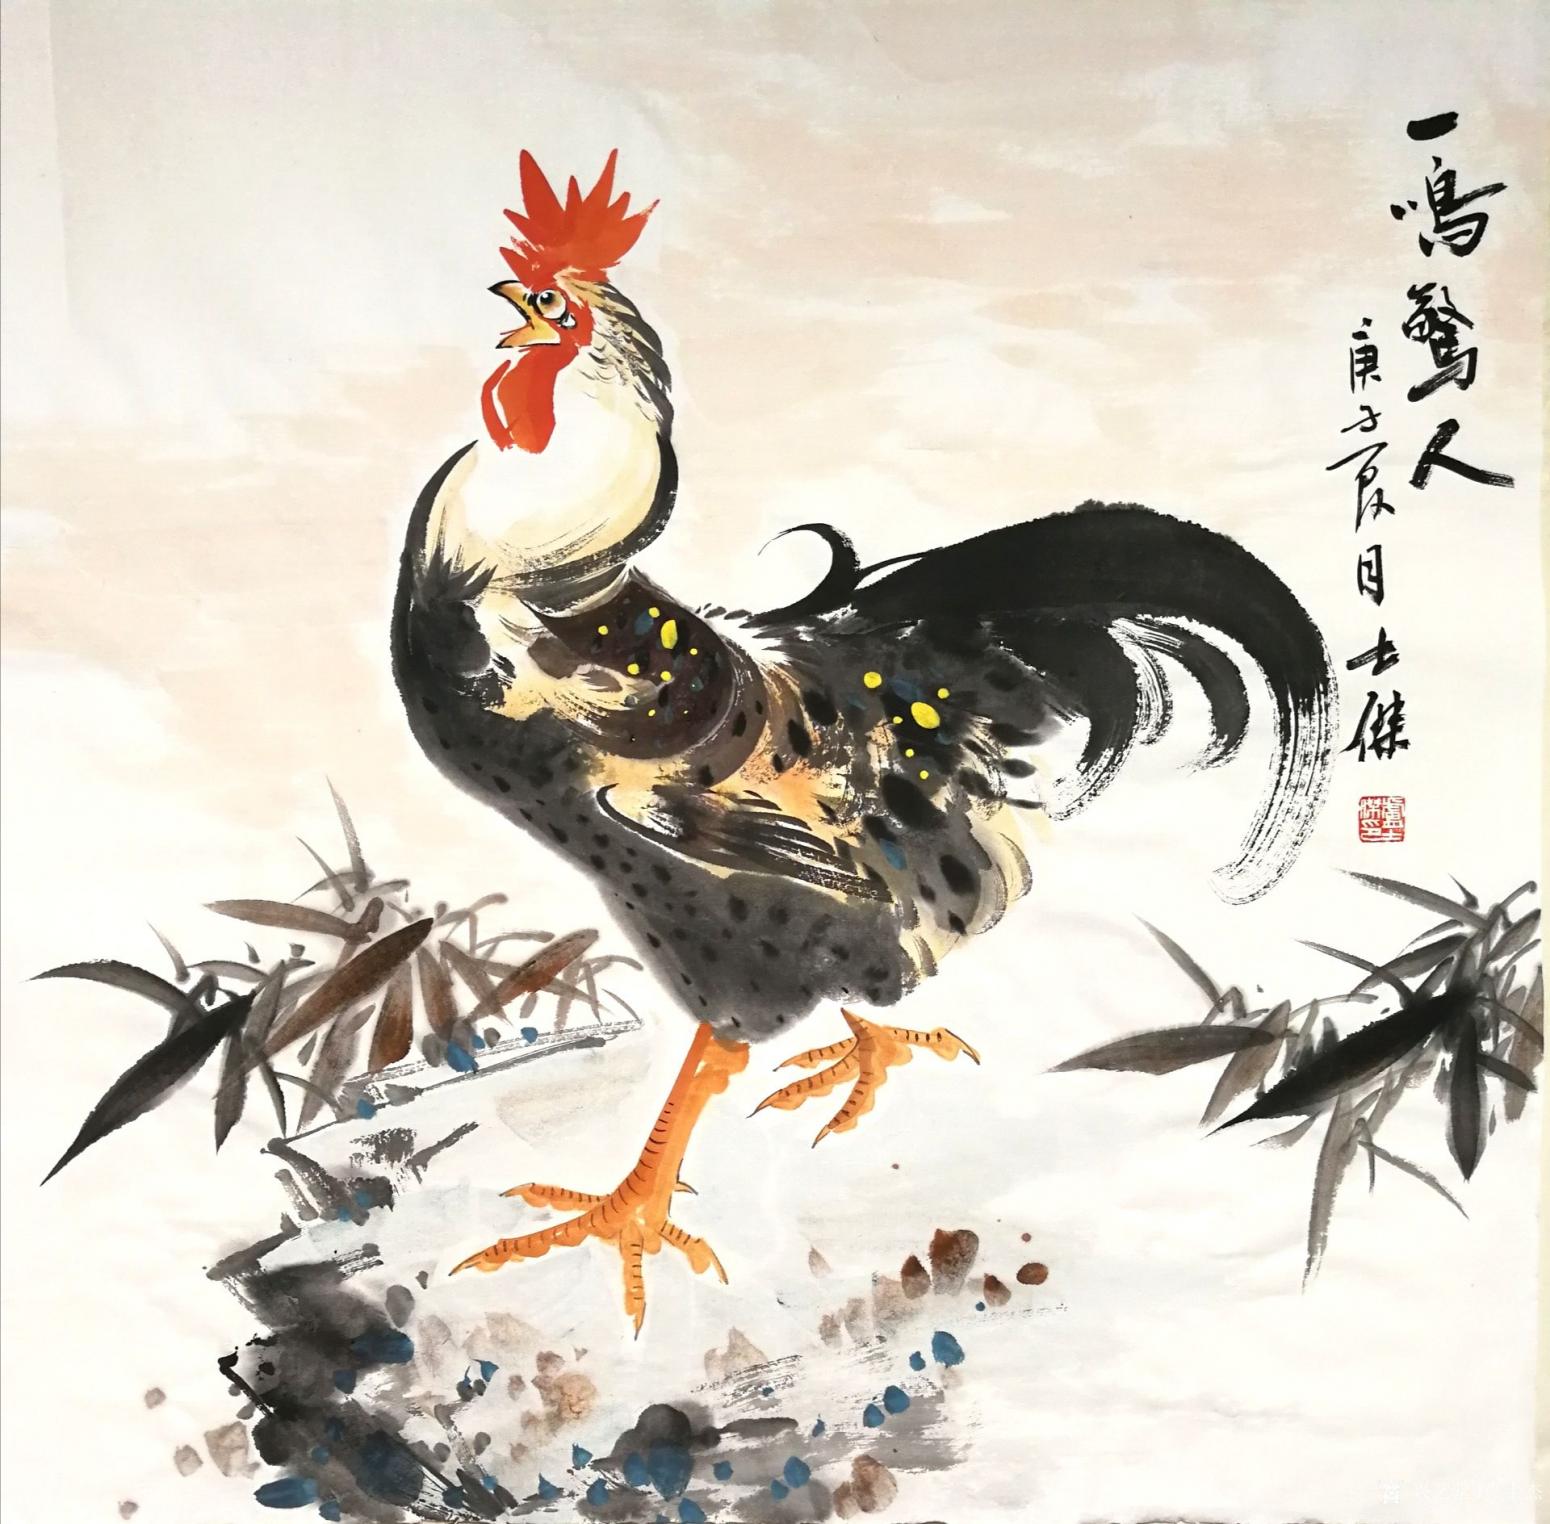 卢士杰国画作品《公鸡-一鸣惊人》